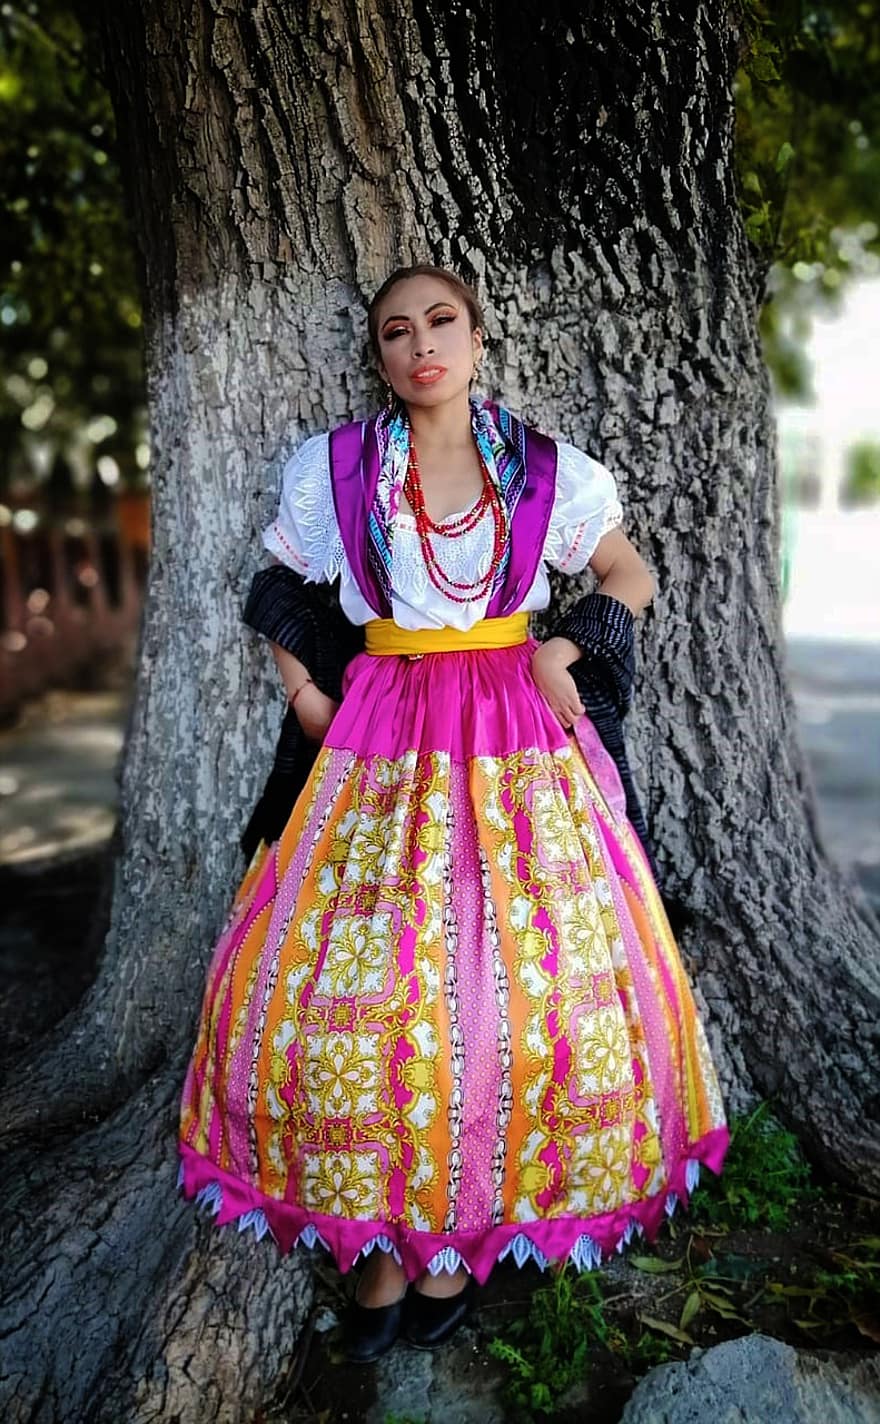 nő, táncos, folklór, tánc, hagyományos, hagyomány, kosztüm, ruha